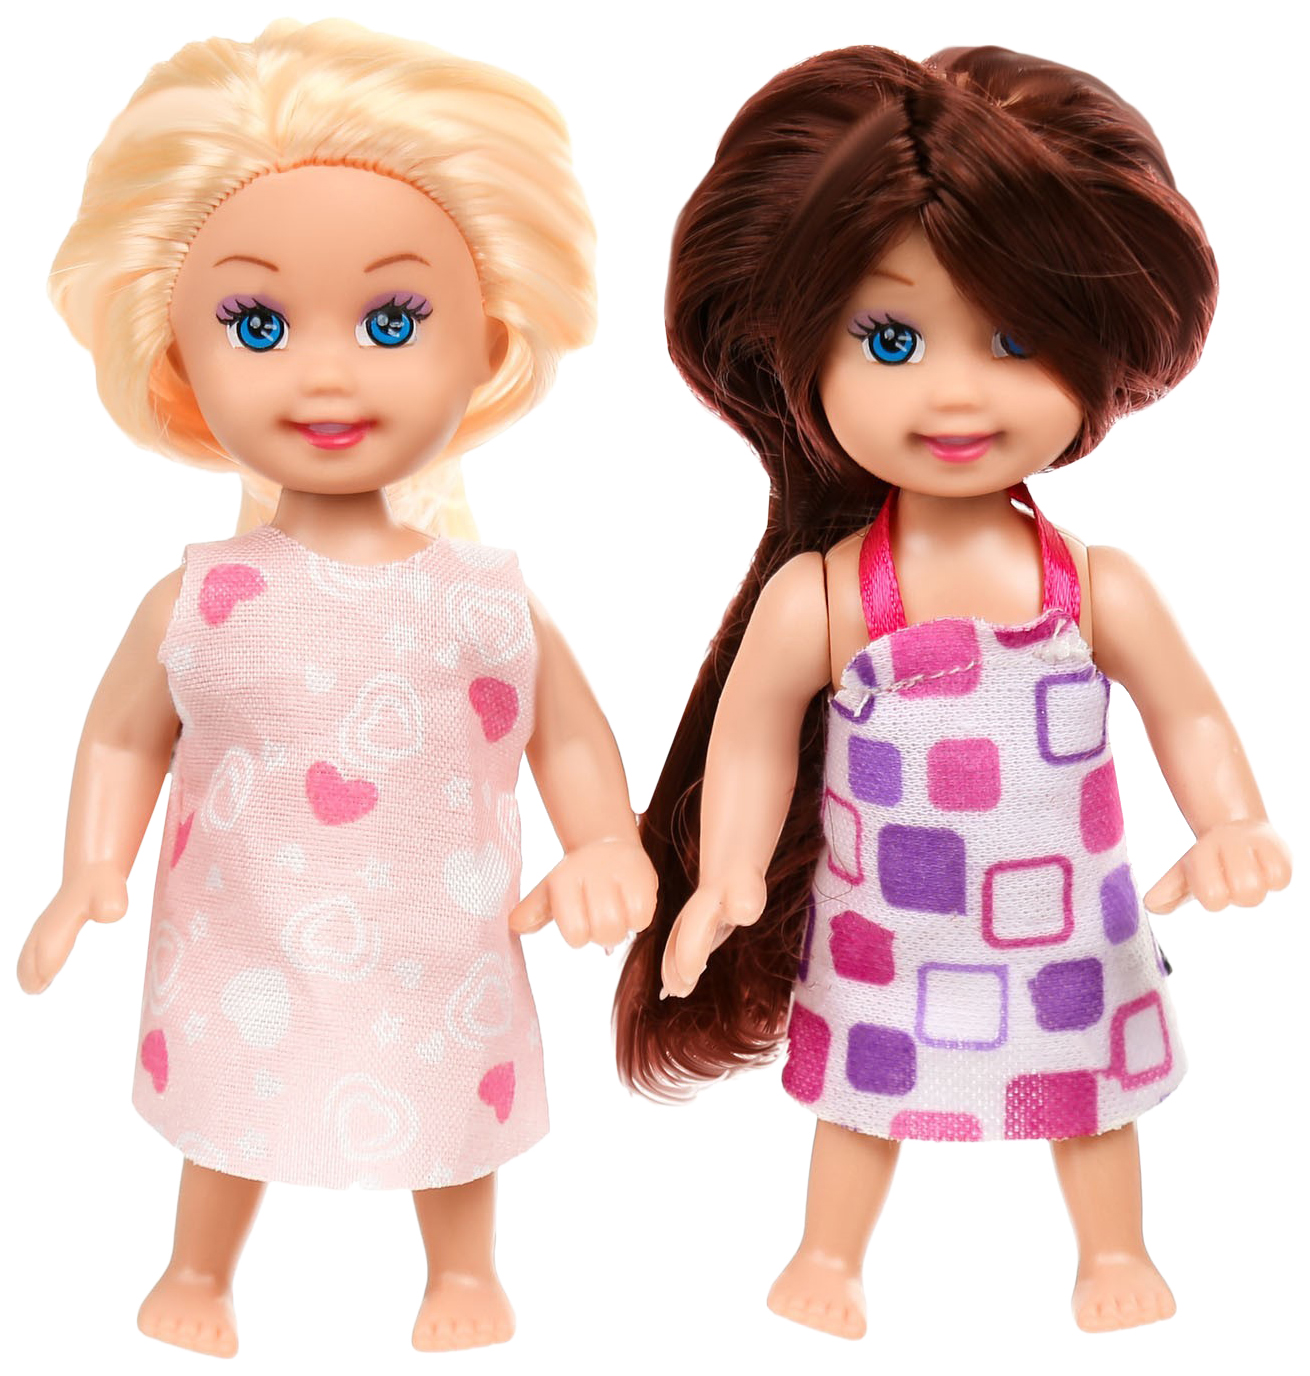 Купить игрушку сестре. Кукла Стефани. Игрушки для сестричек. Сестры игрушки. Игрушки для сестры 8 лет.